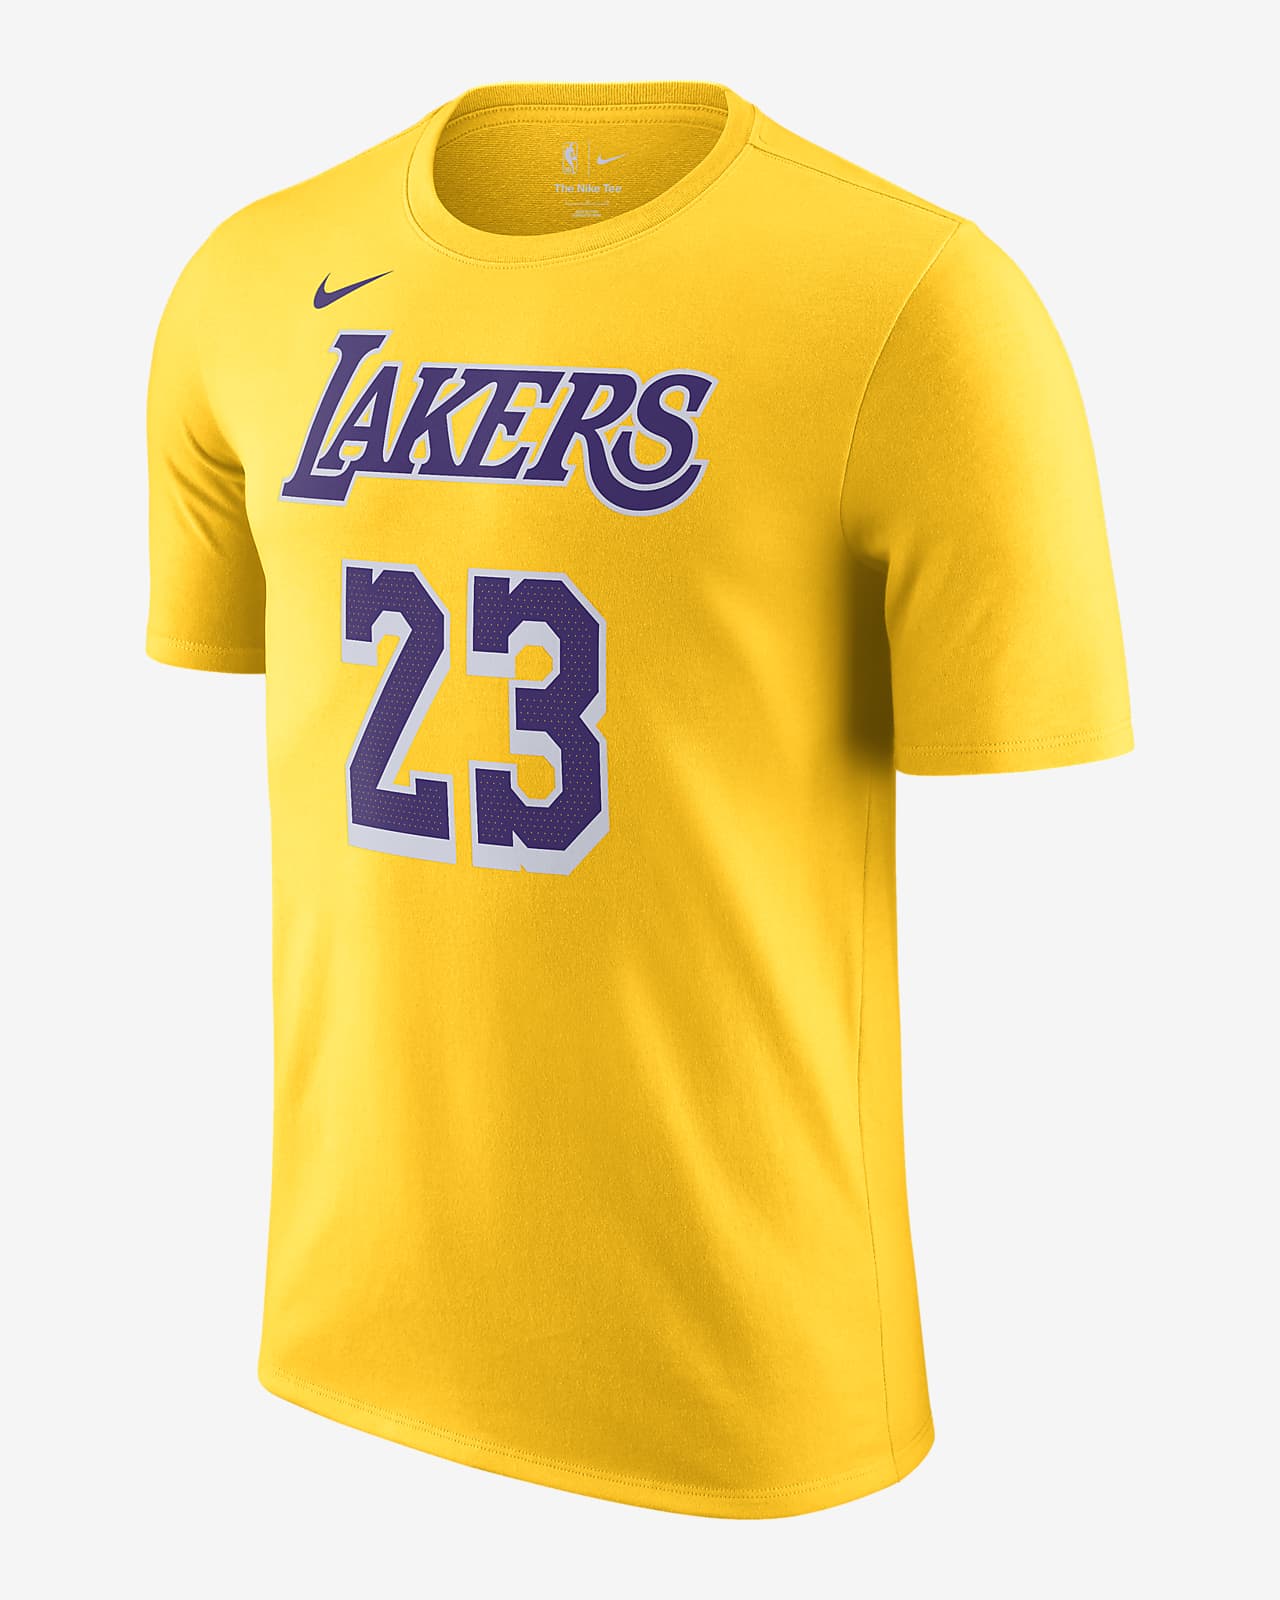 Playera Nike NBA Los Angeles Lakers para hombre